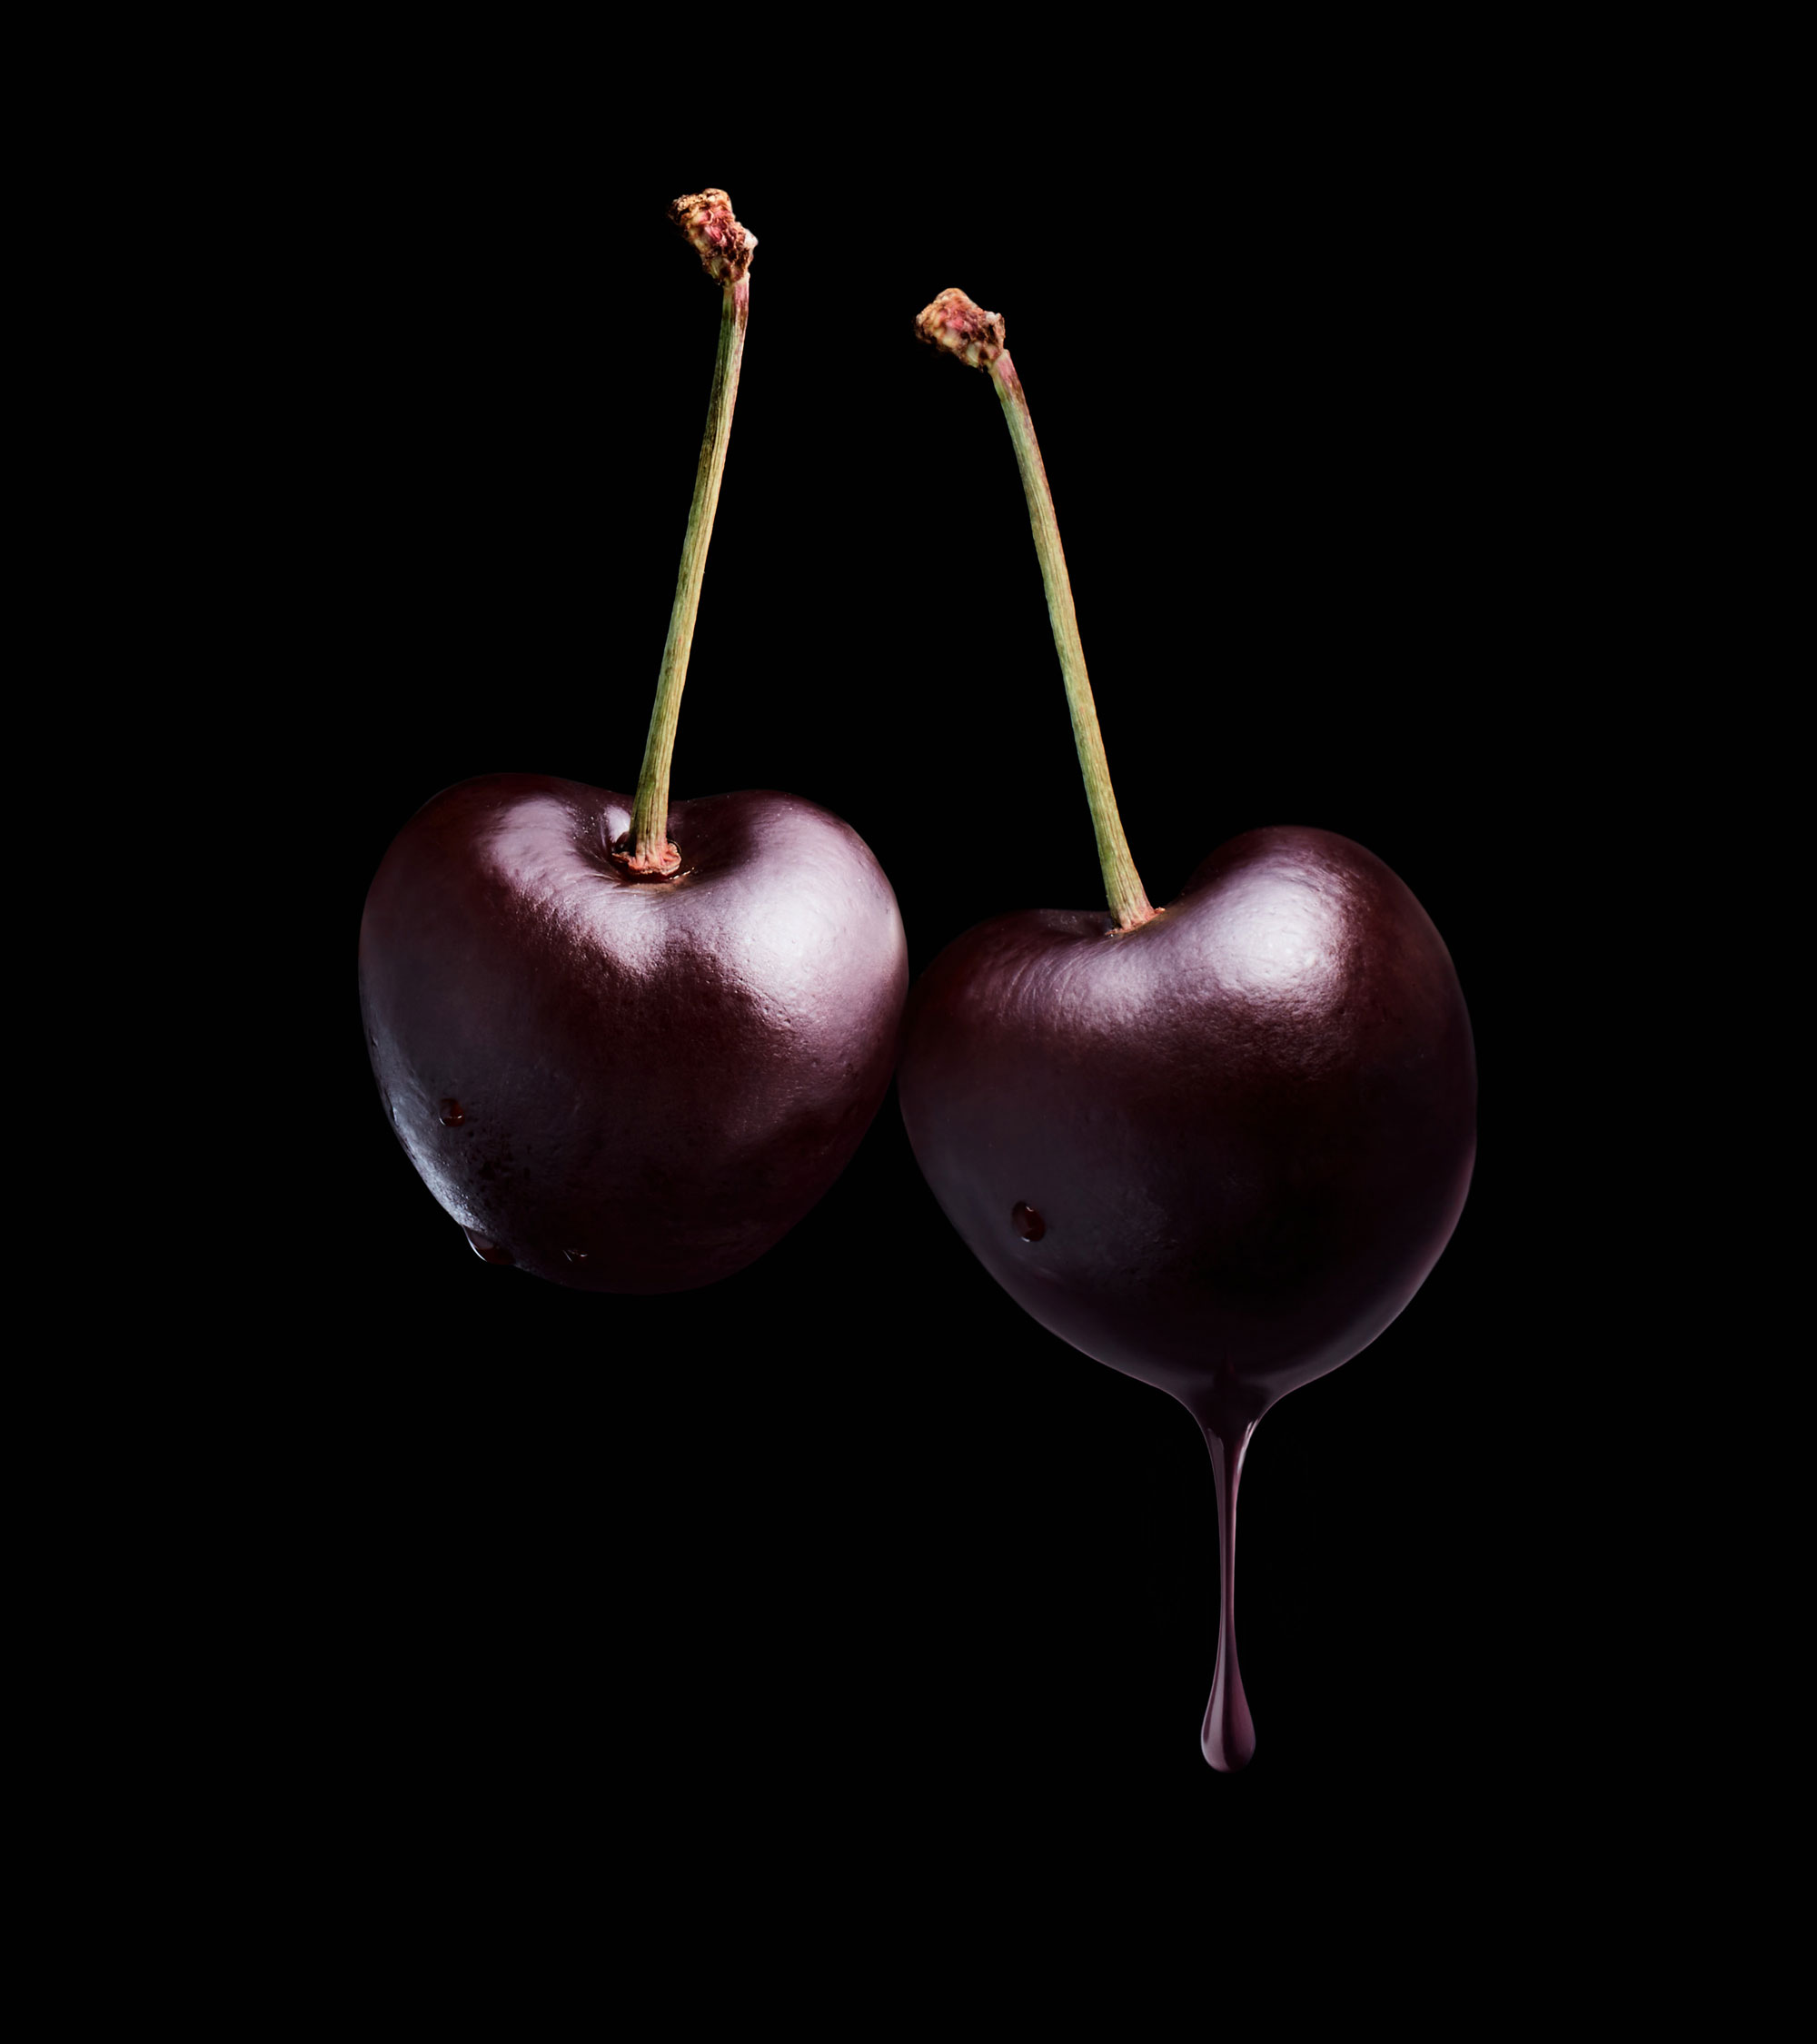 Imagery-Art-Drop-Cherries